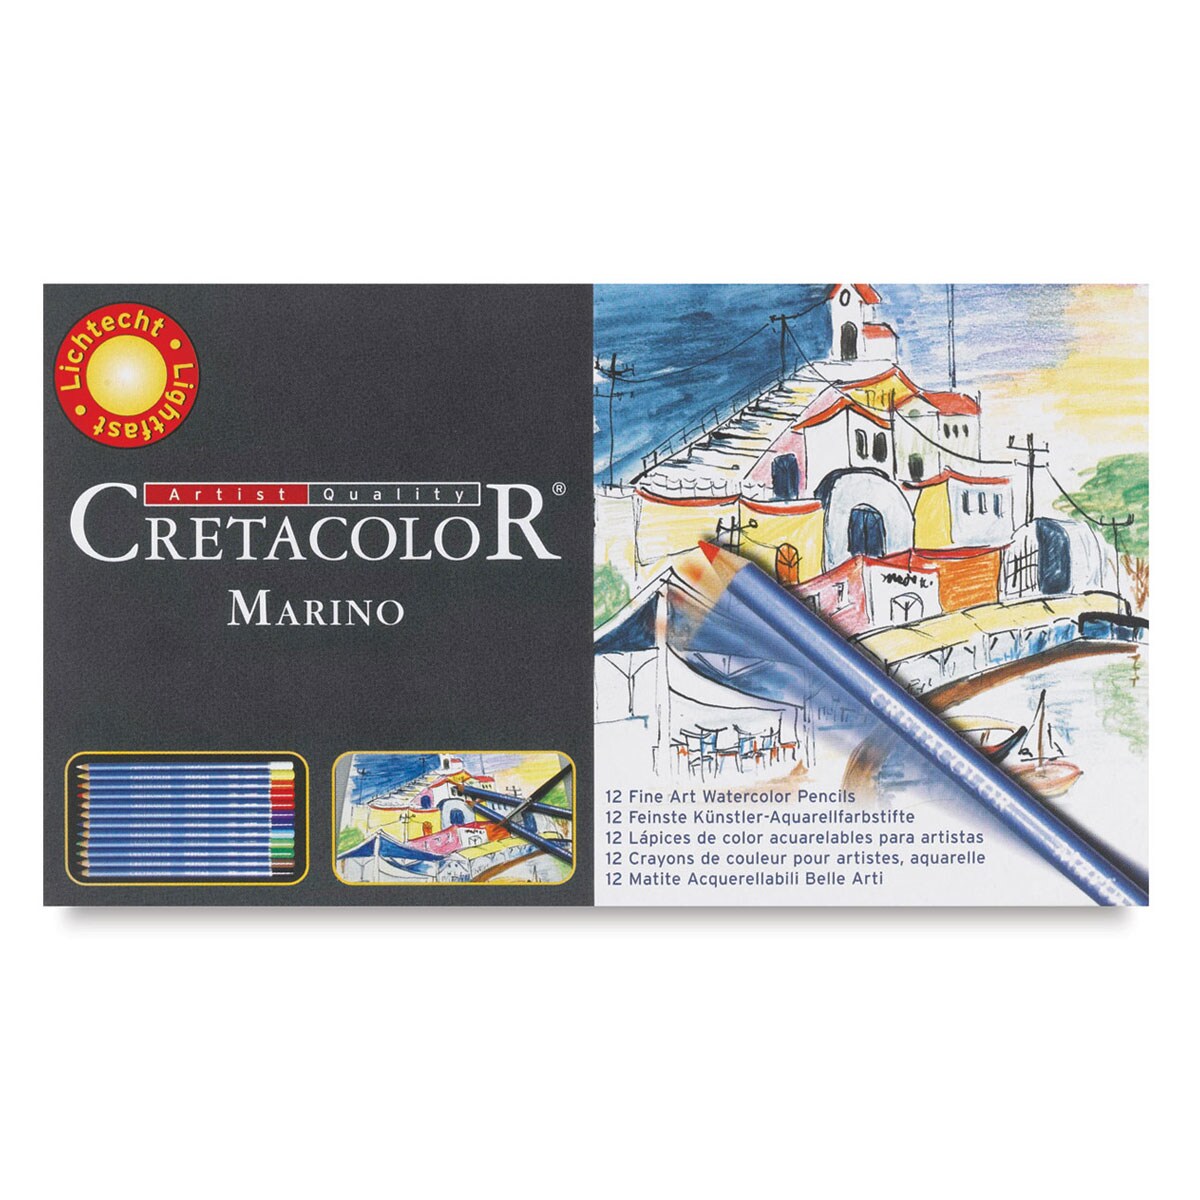 Cretacolor Marino Watercolor Pencil Set - Assorted Colors, Set of 12